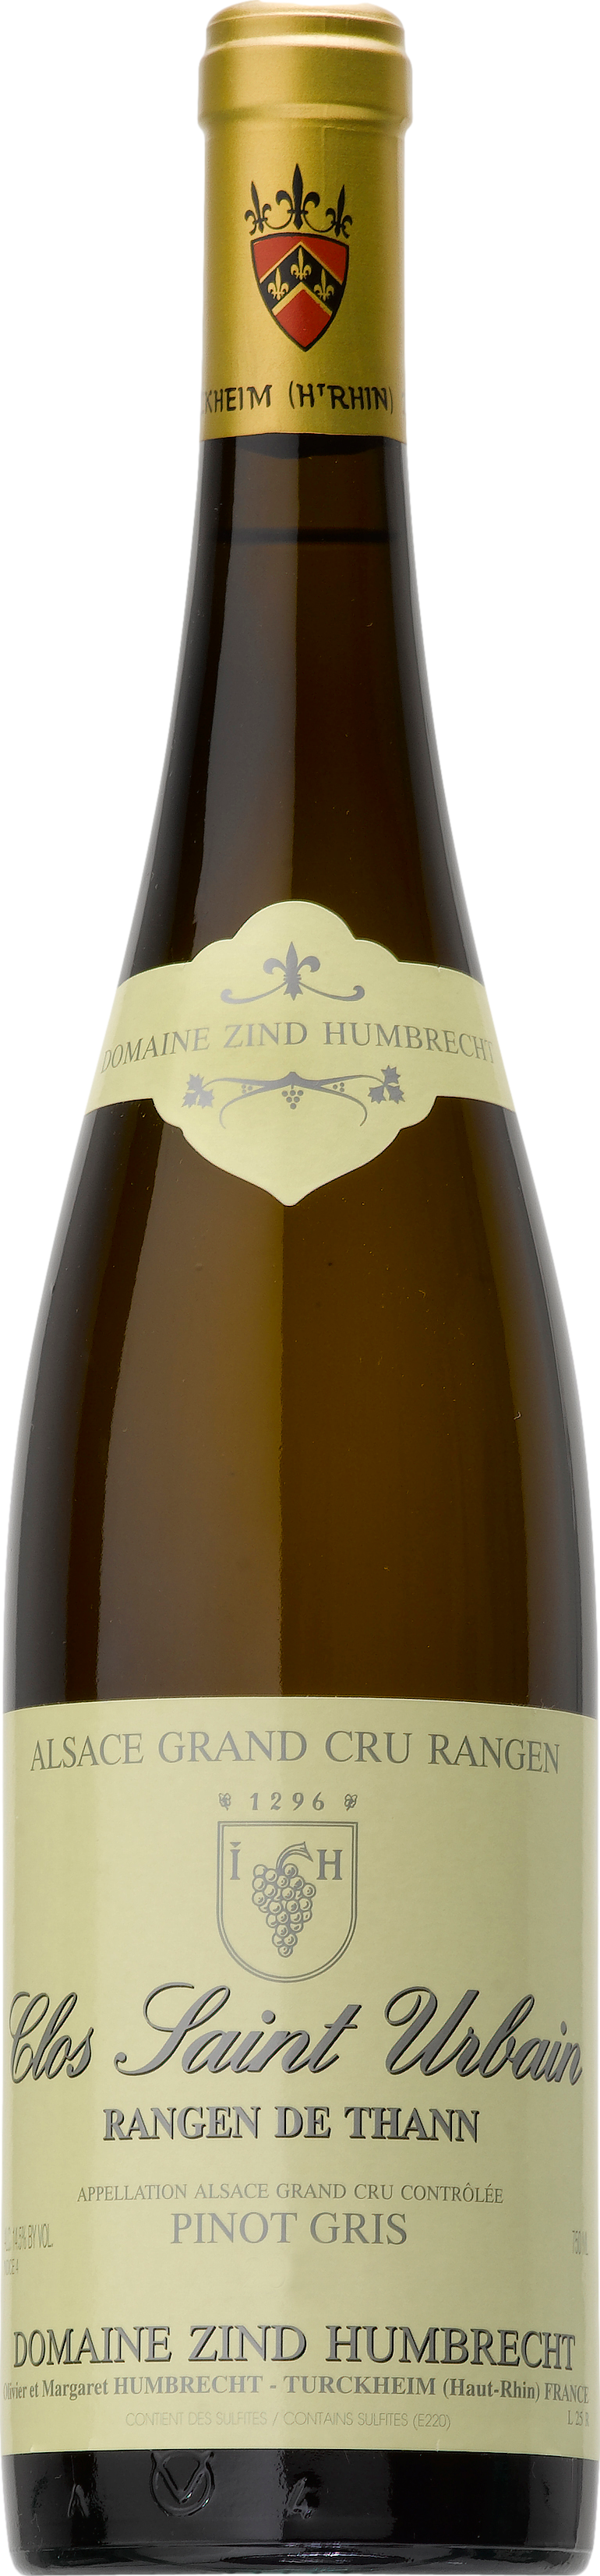 CR 1 günstig Kaufen-Domaine Zind-Humbrecht Pinot Gris Grand Cru Rangen de Thann Clos Saint Urbain 2016. Domaine Zind-Humbrecht Pinot Gris Grand Cru Rangen de Thann Clos Saint Urbain 2016 . 